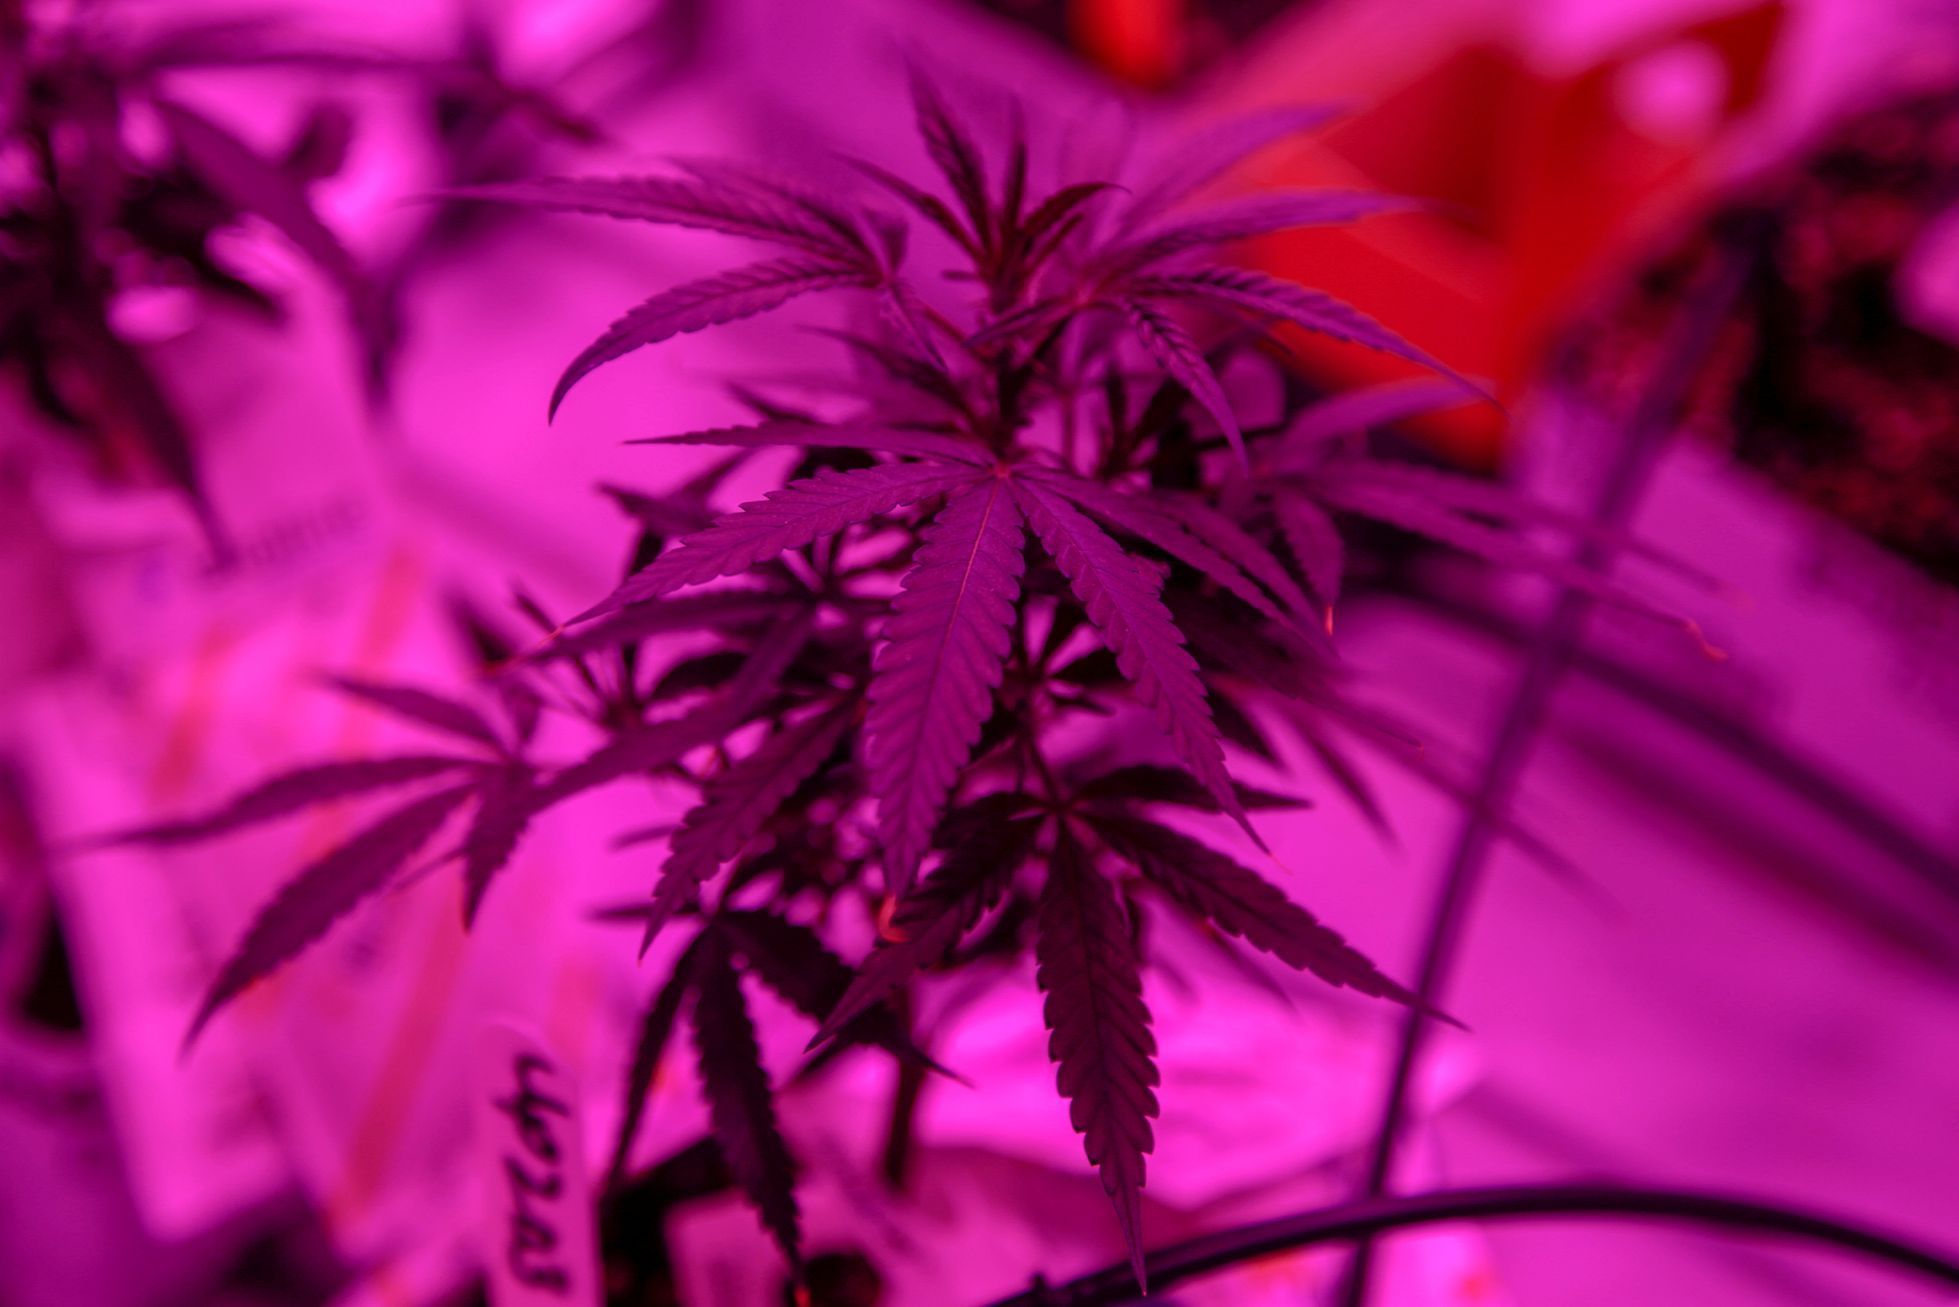 Fotogalerie / Jak se studenti se v Kanadě učí pěstovat marihuanu / Reuters / 2018